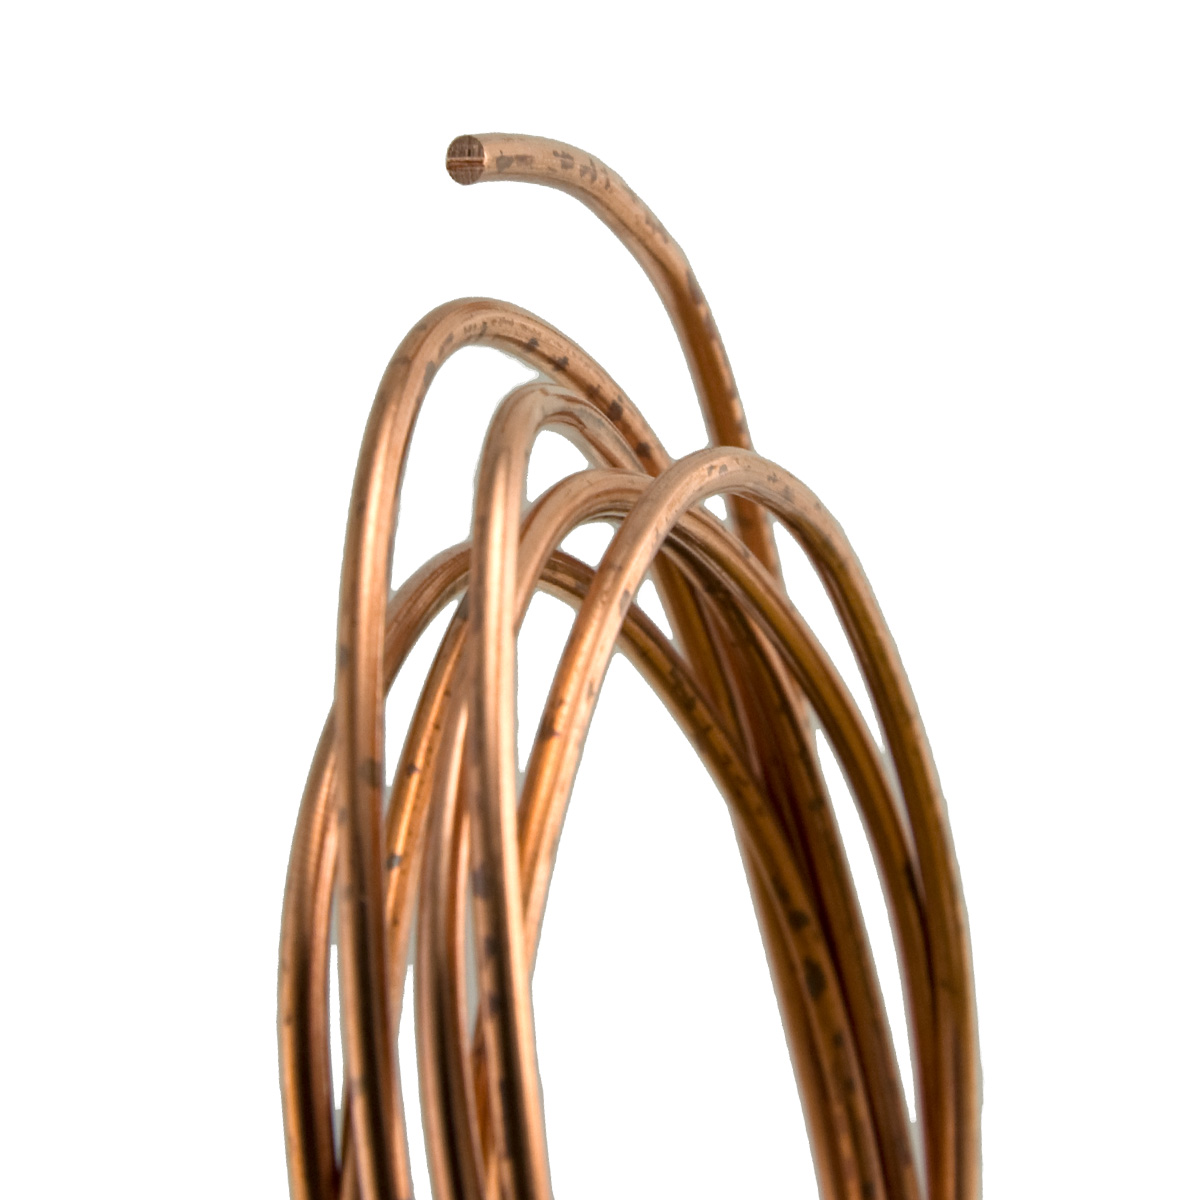 8 Gauge Round Dead Soft Copper Wire: Jewelry Making Supplies